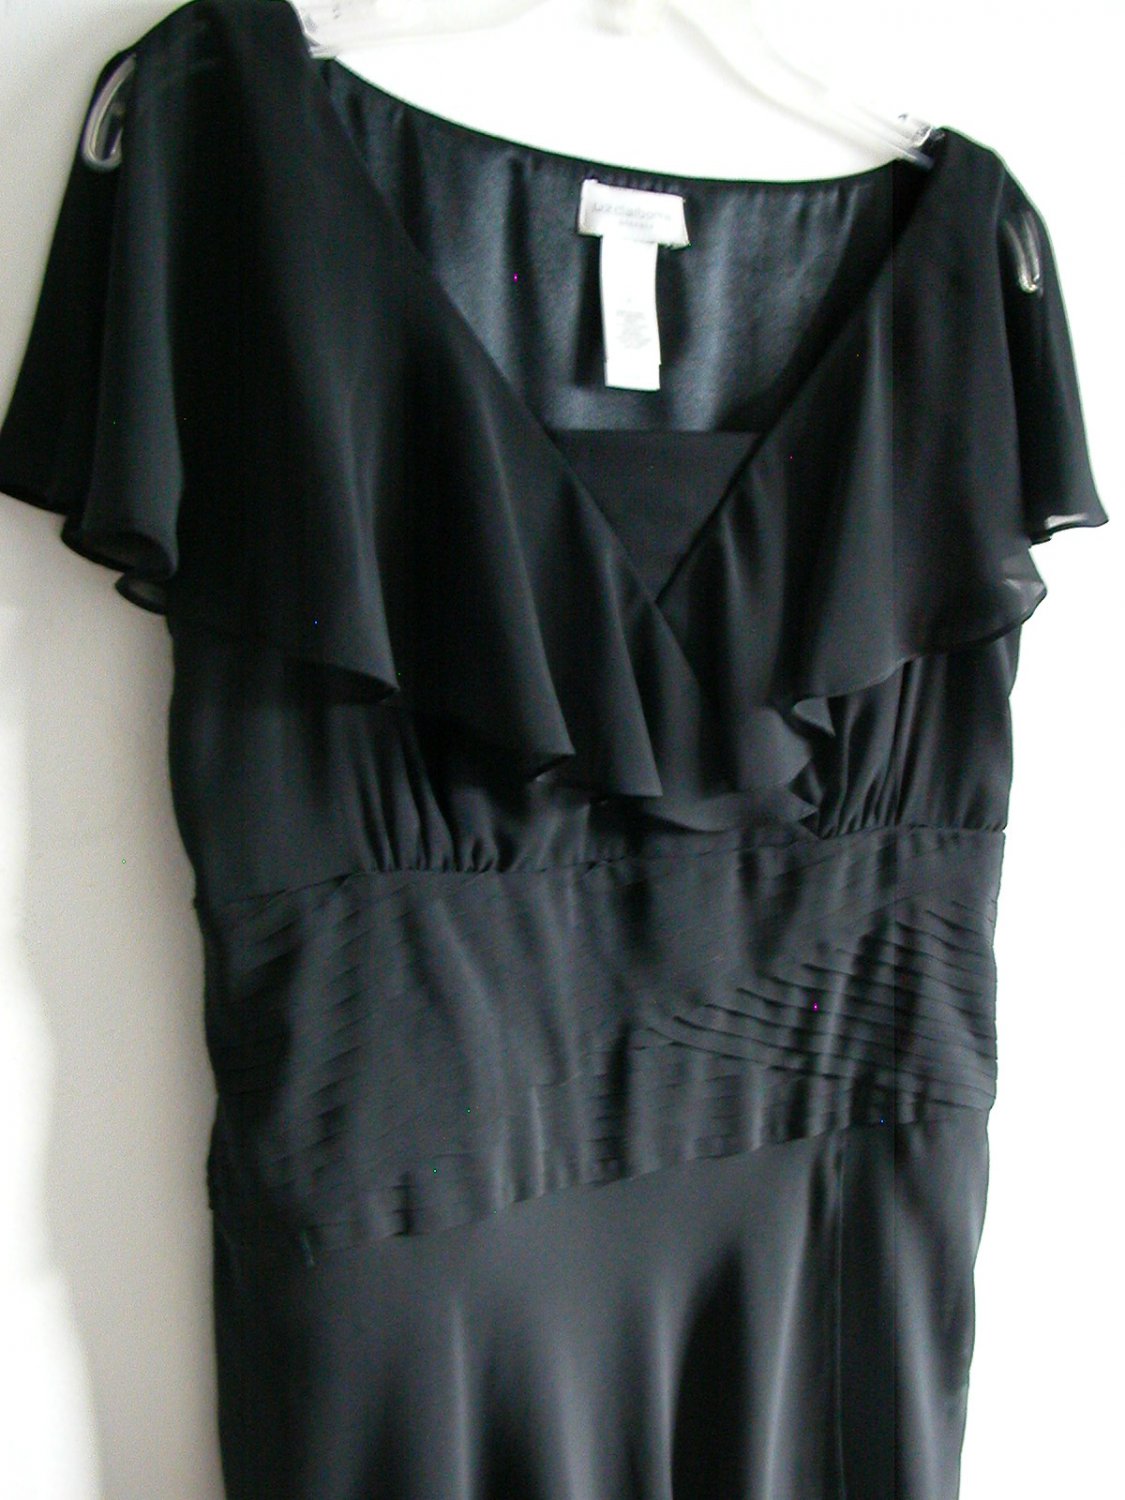 Liz Claiborne black ruffle empire cummerbund waist evening dress size 6